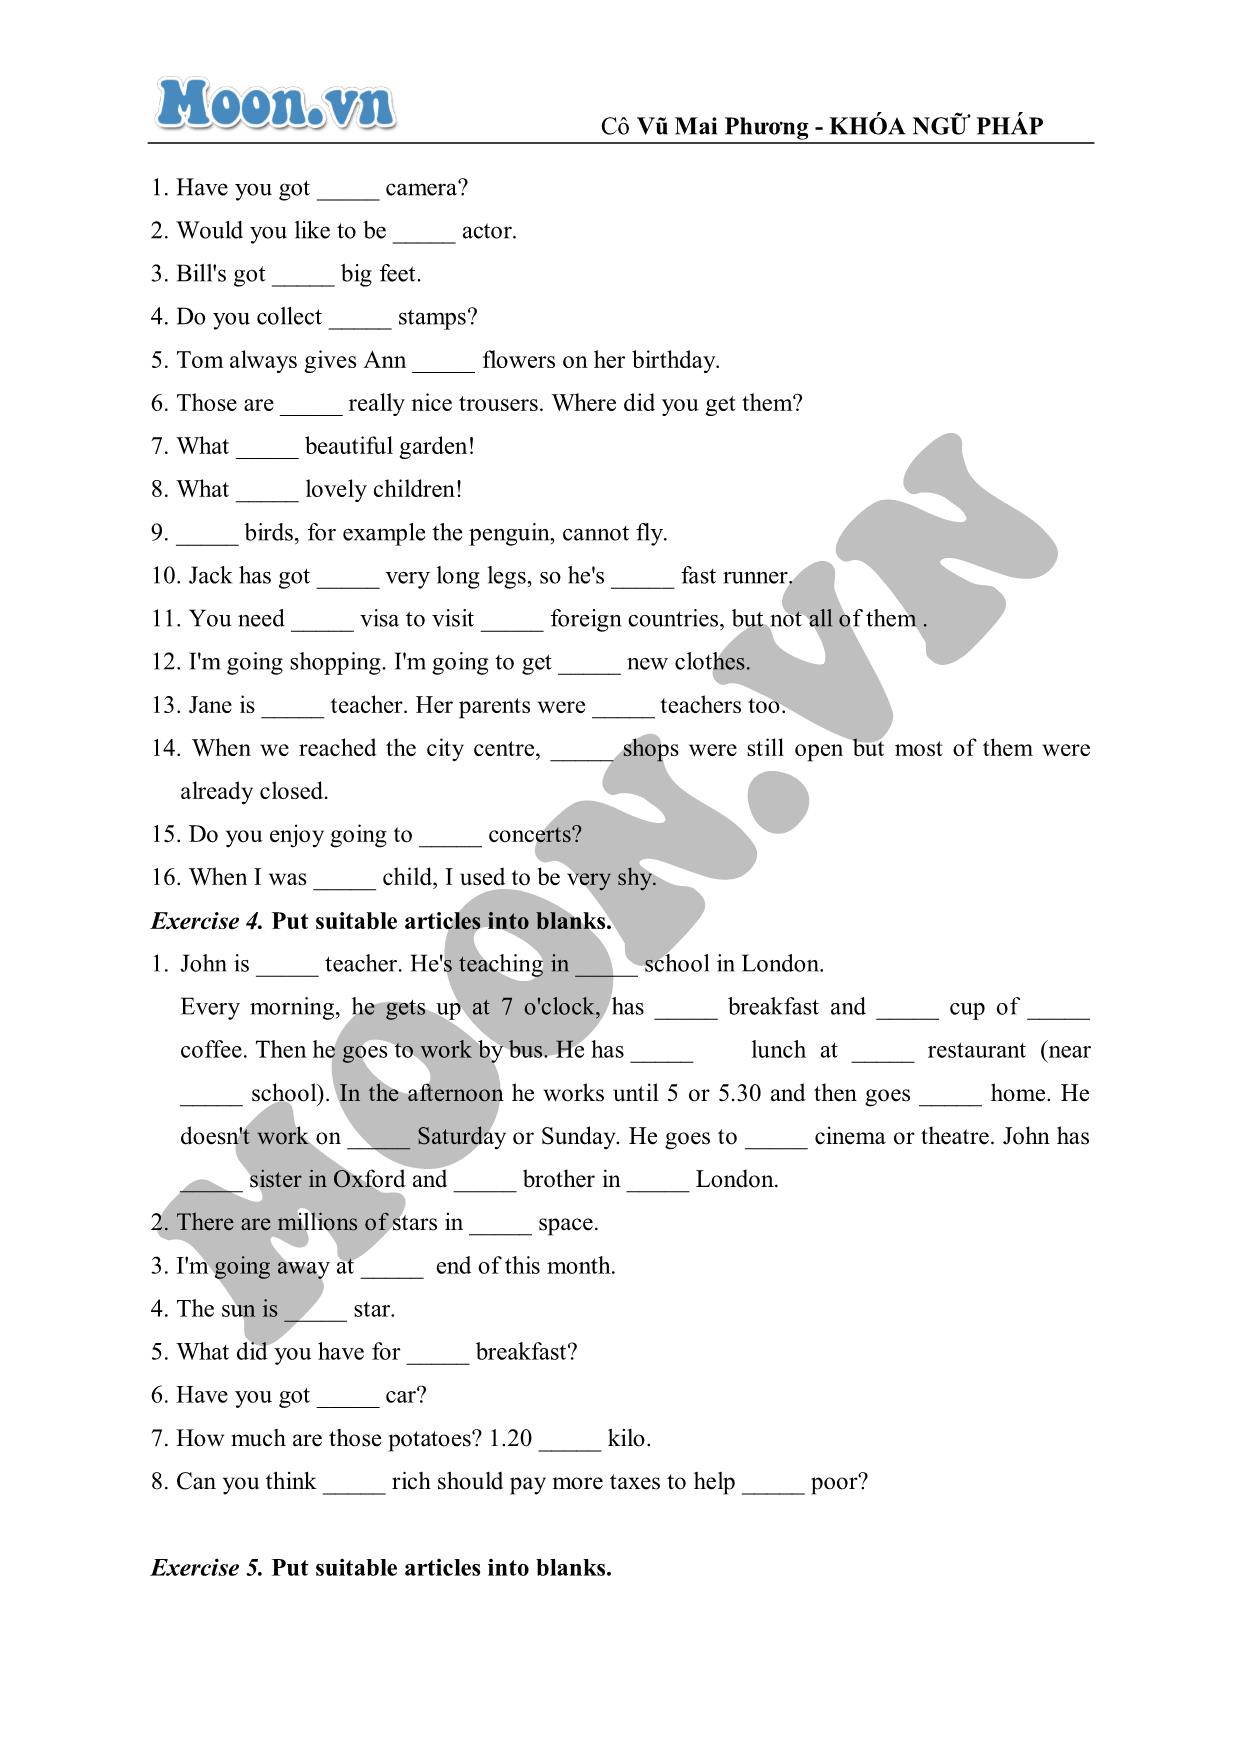 Bài luyện tập nâng cao về mạo từ (exercises) trang 2